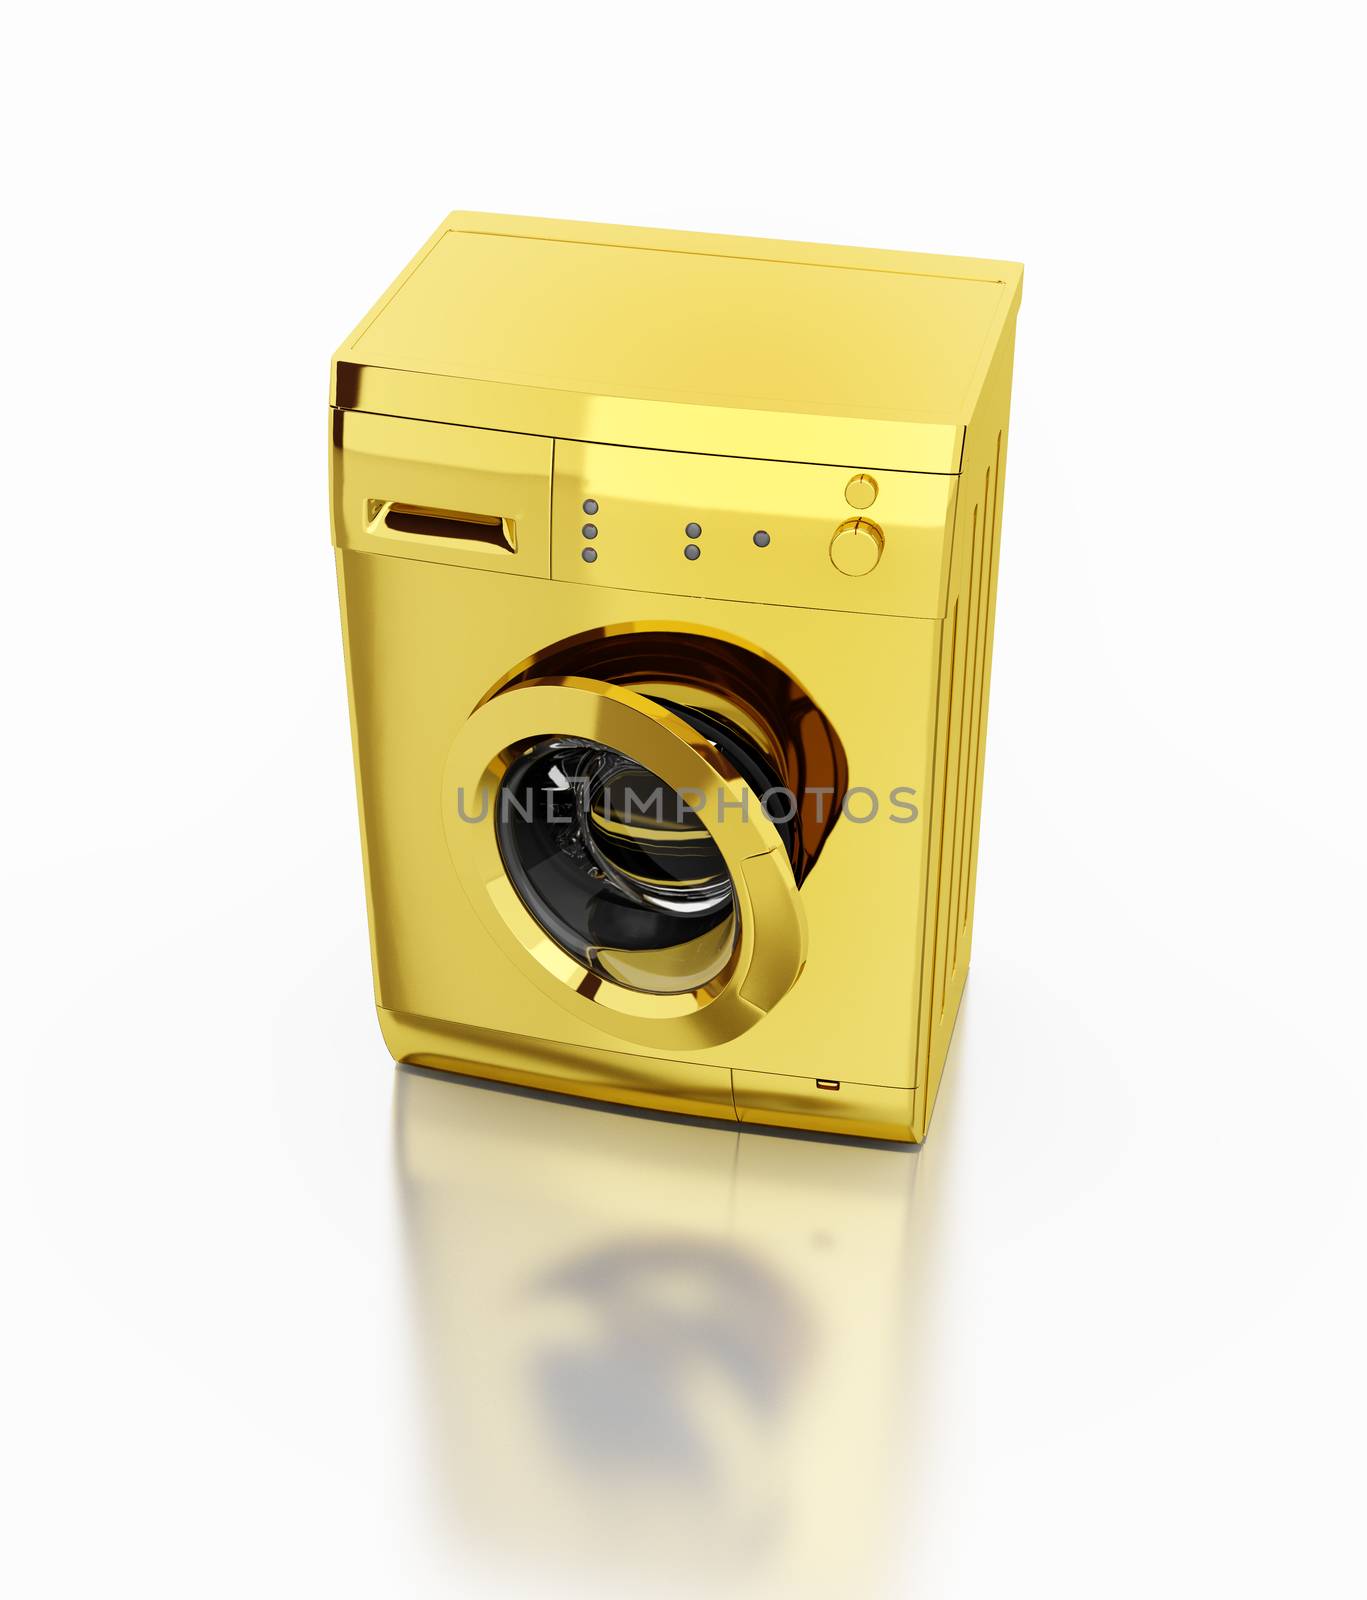 gold washing machine by vicnt